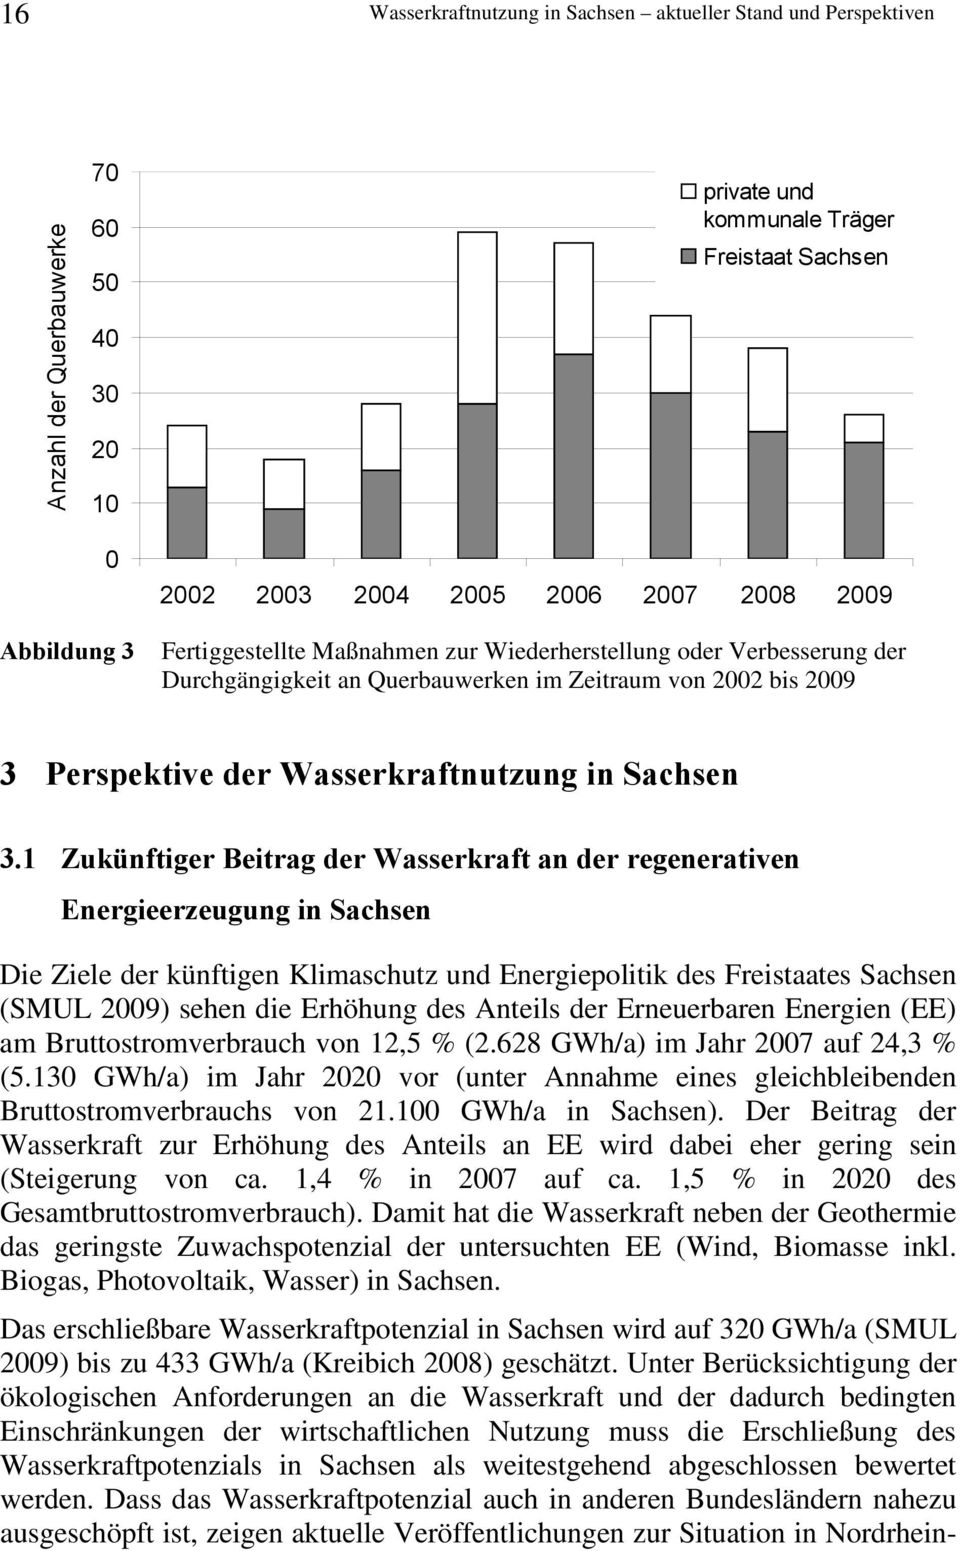 1 Zukünftiger Beitrag der Wasserkraft an der regenerativen Energieerzeugung in Sachsen Die Ziele der künftigen Klimaschutz und Energiepolitik des Freistaates Sachsen (SMUL 2009) sehen die Erhöhung